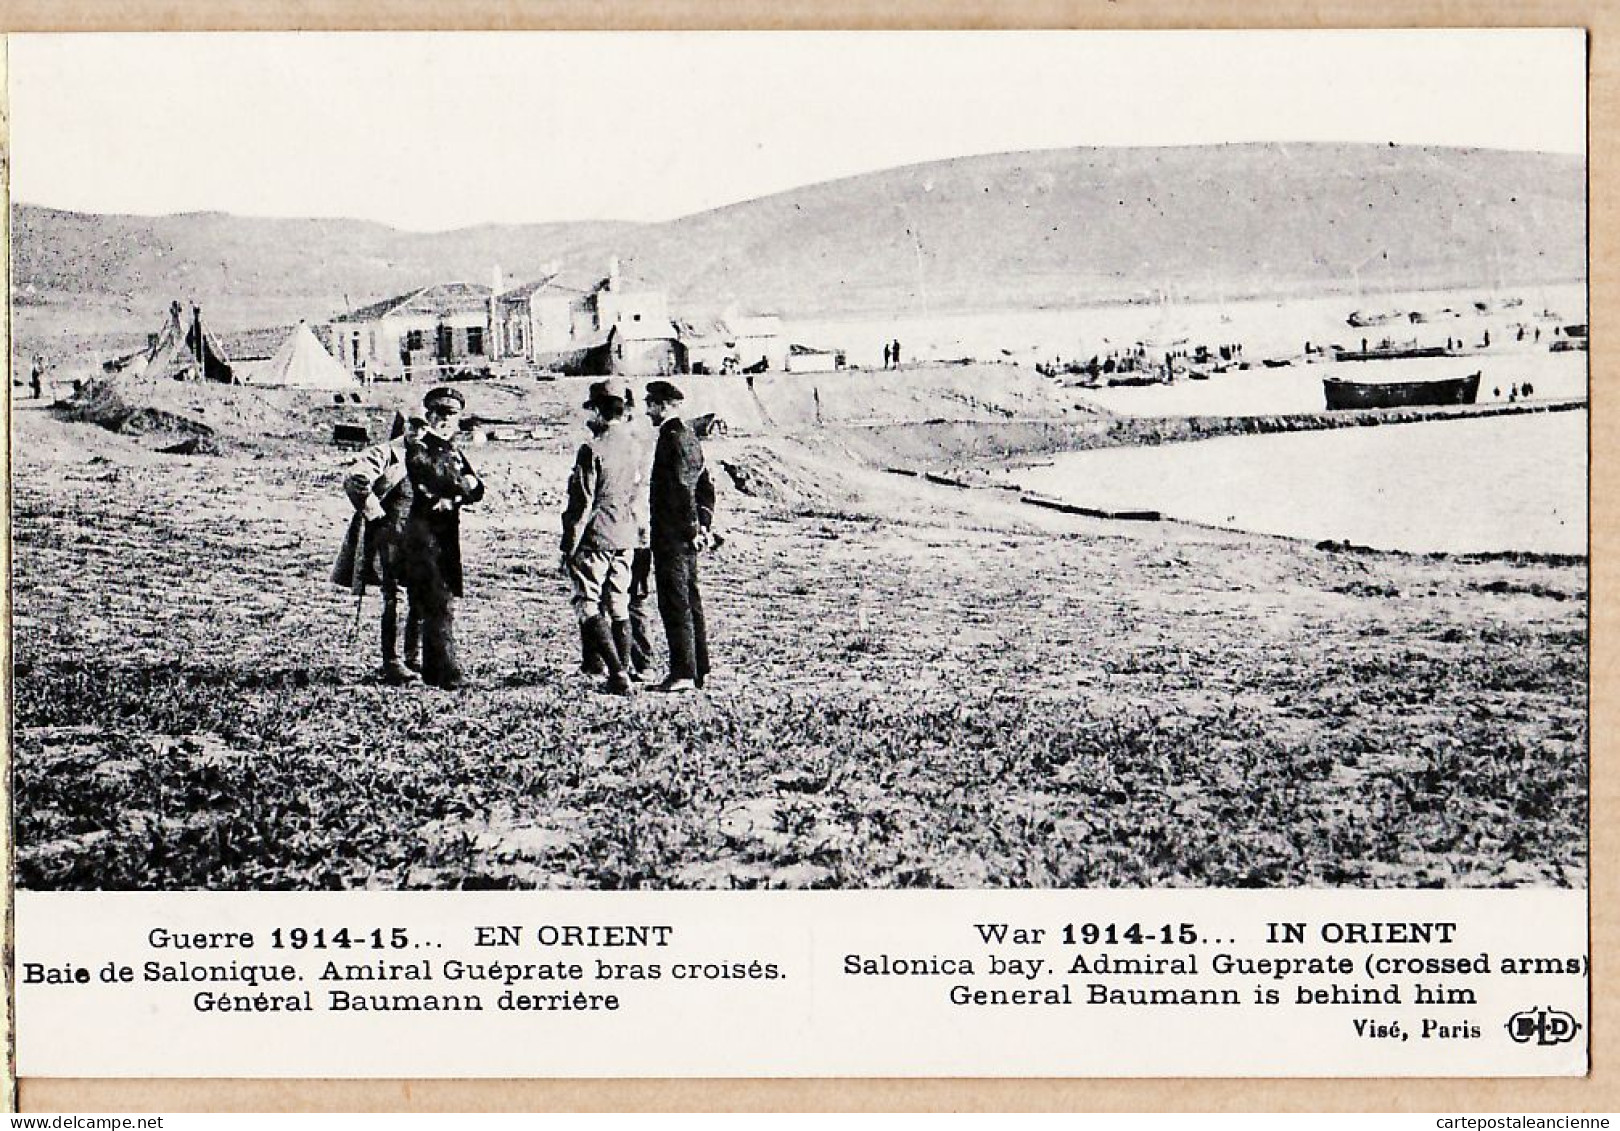 06374 / Baie De SALONIQUE SALONICA Visite Rencontre Amiral GUEPRATE Général BAUMANN CpaWW1 Guerre 1914-15 LE DELEY - Griechenland